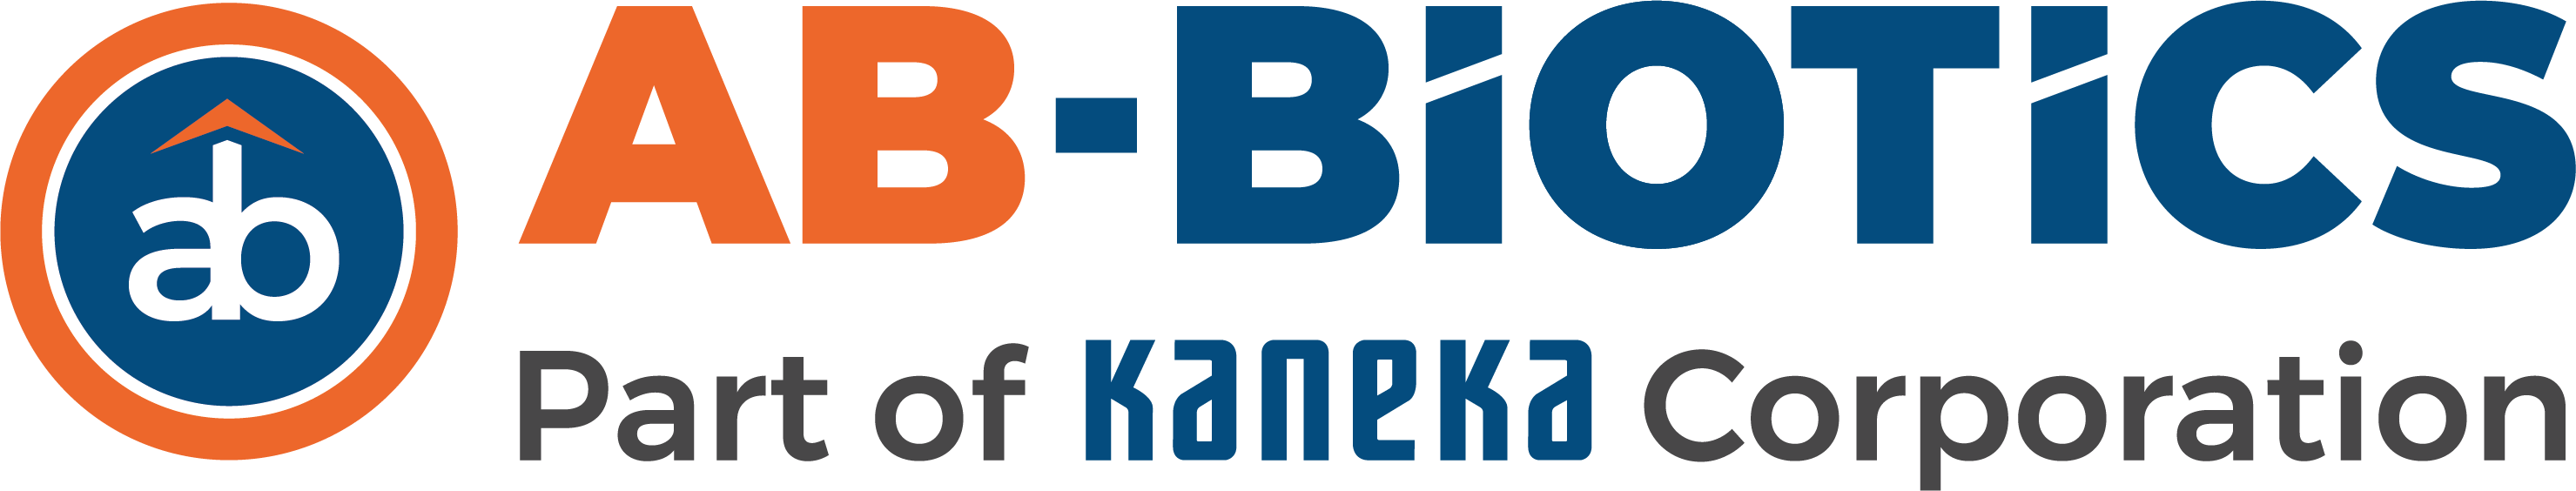 LogoAB-BIOTICS_KANEKA_lateral.png